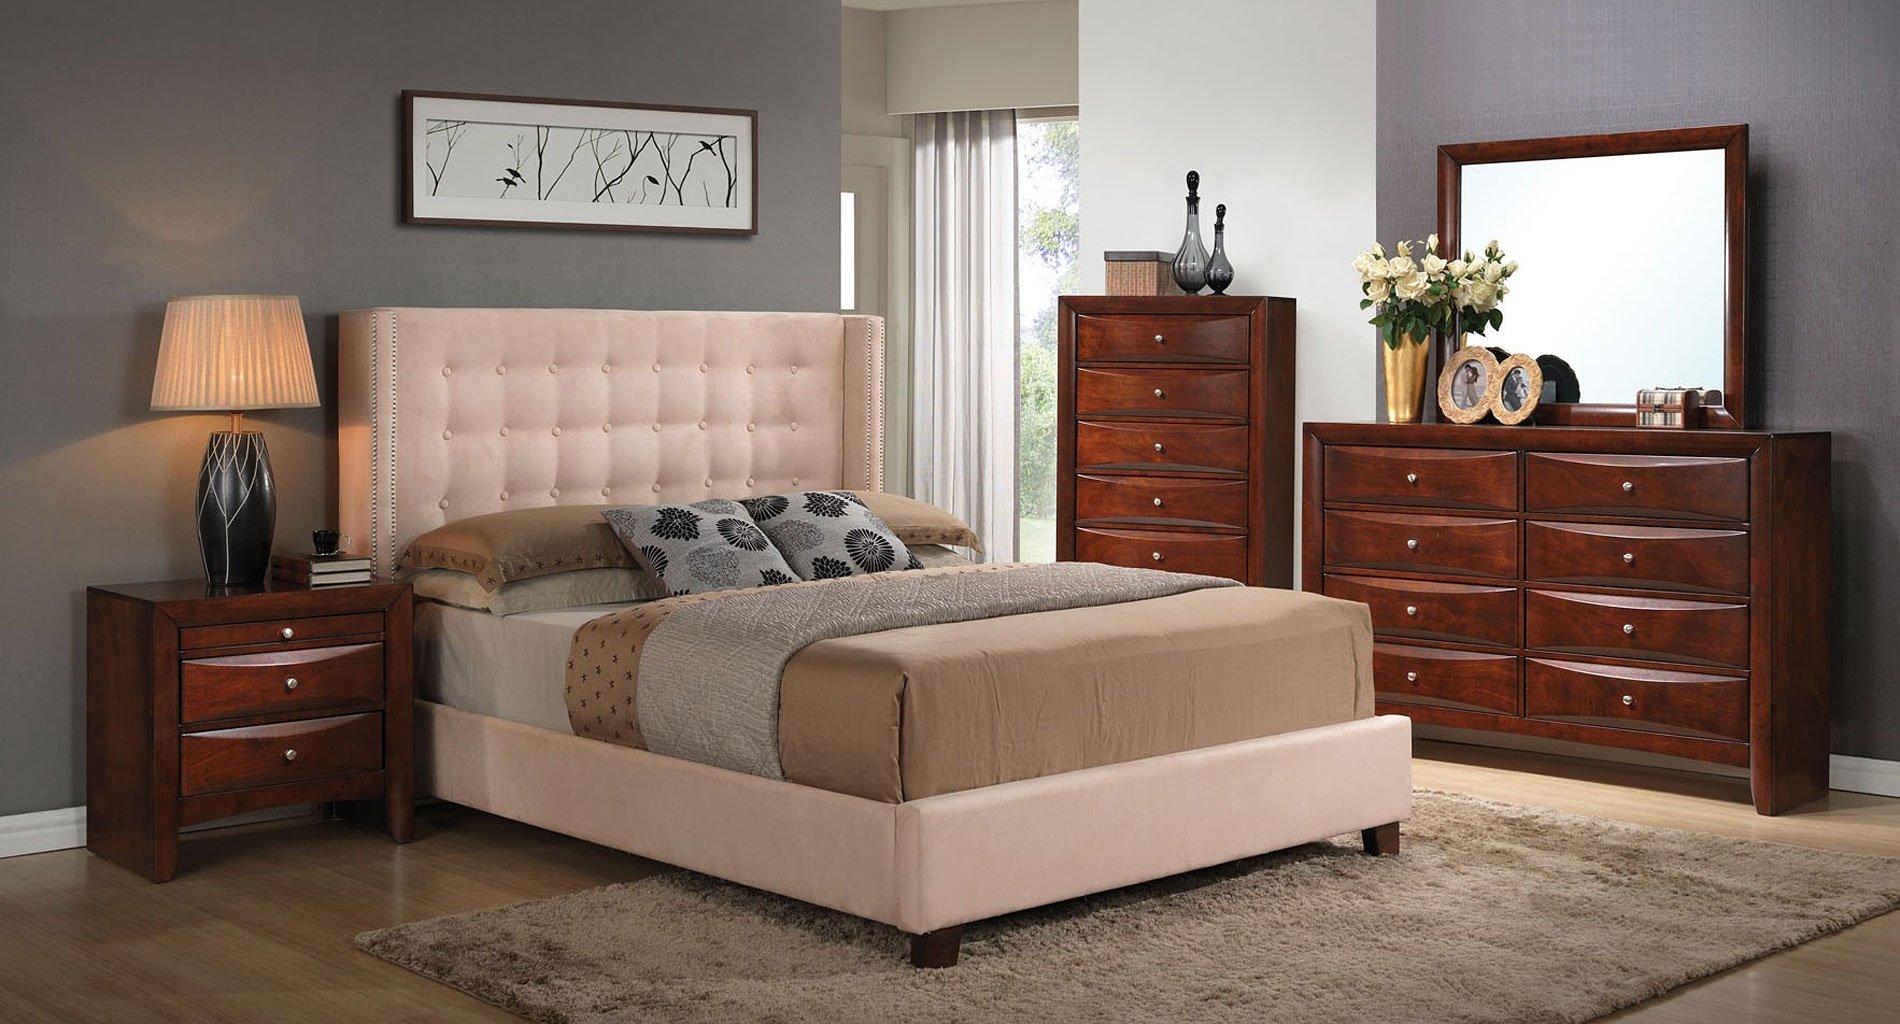 ebay ireland bedroom furniture